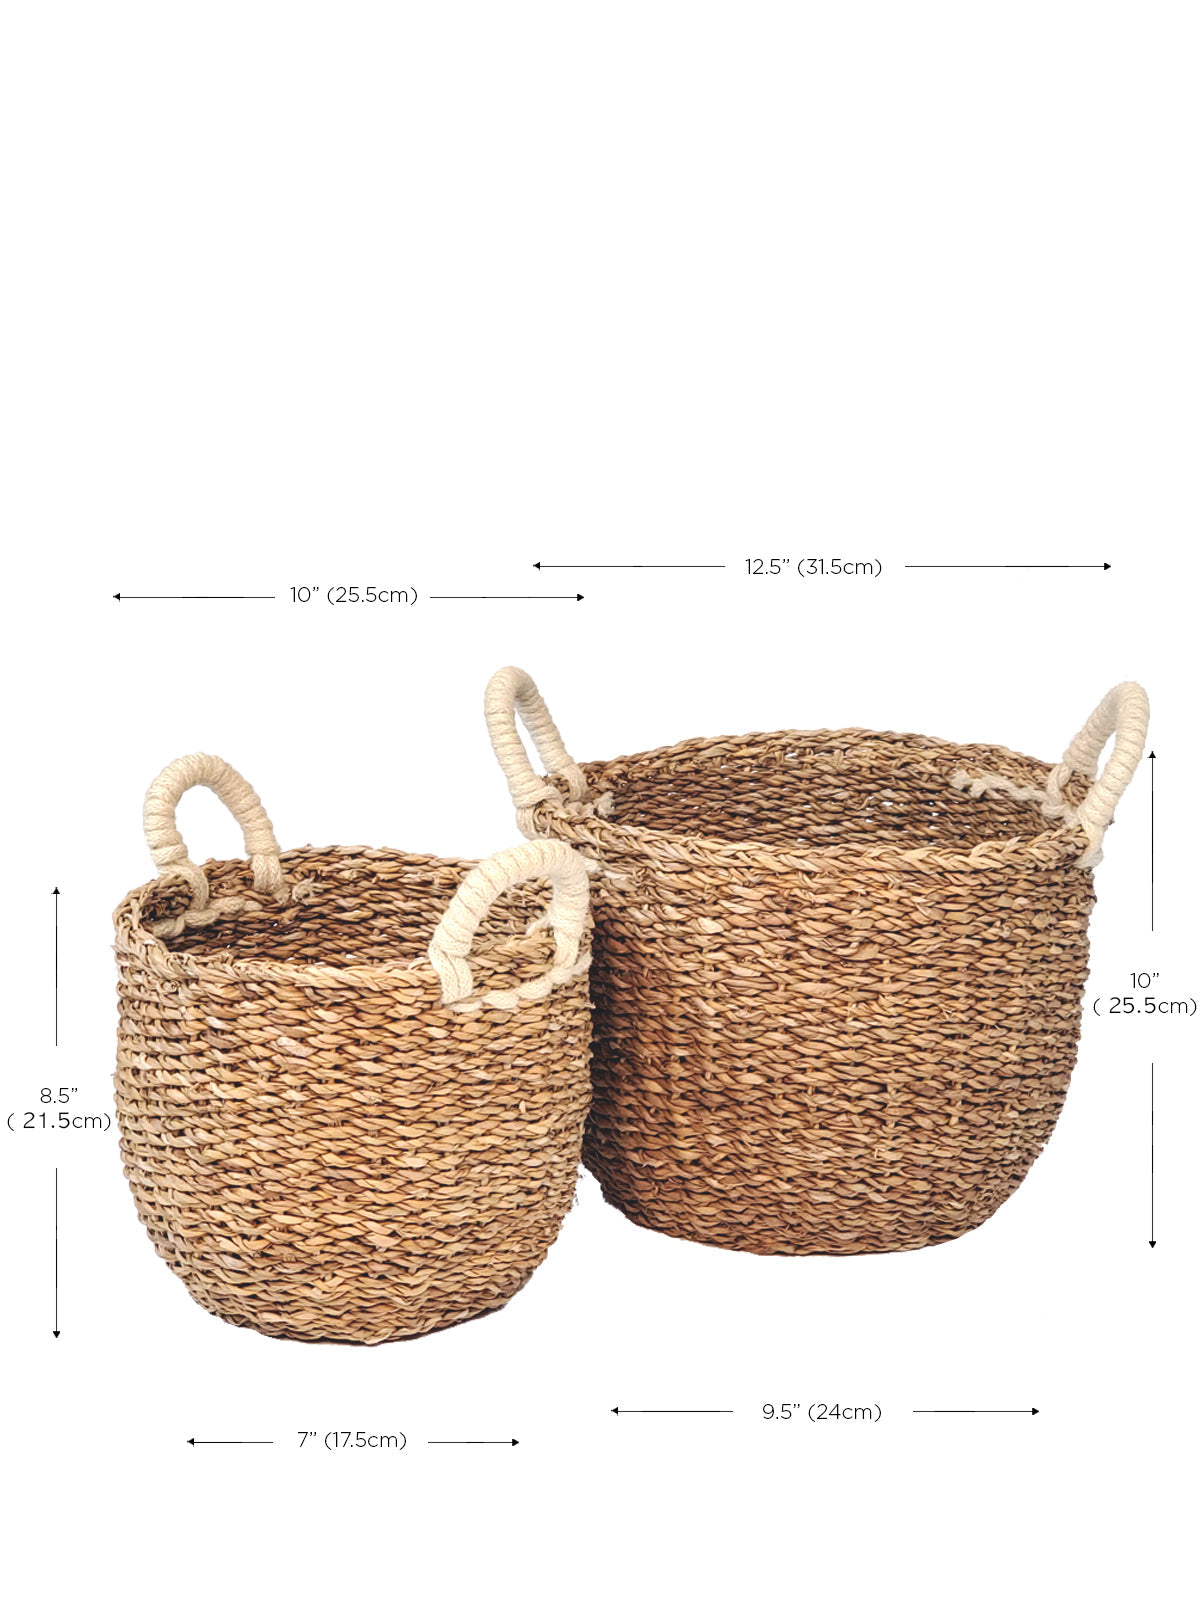  Savar Basket with White Handle by KORISSA KORISSA Perfumarie